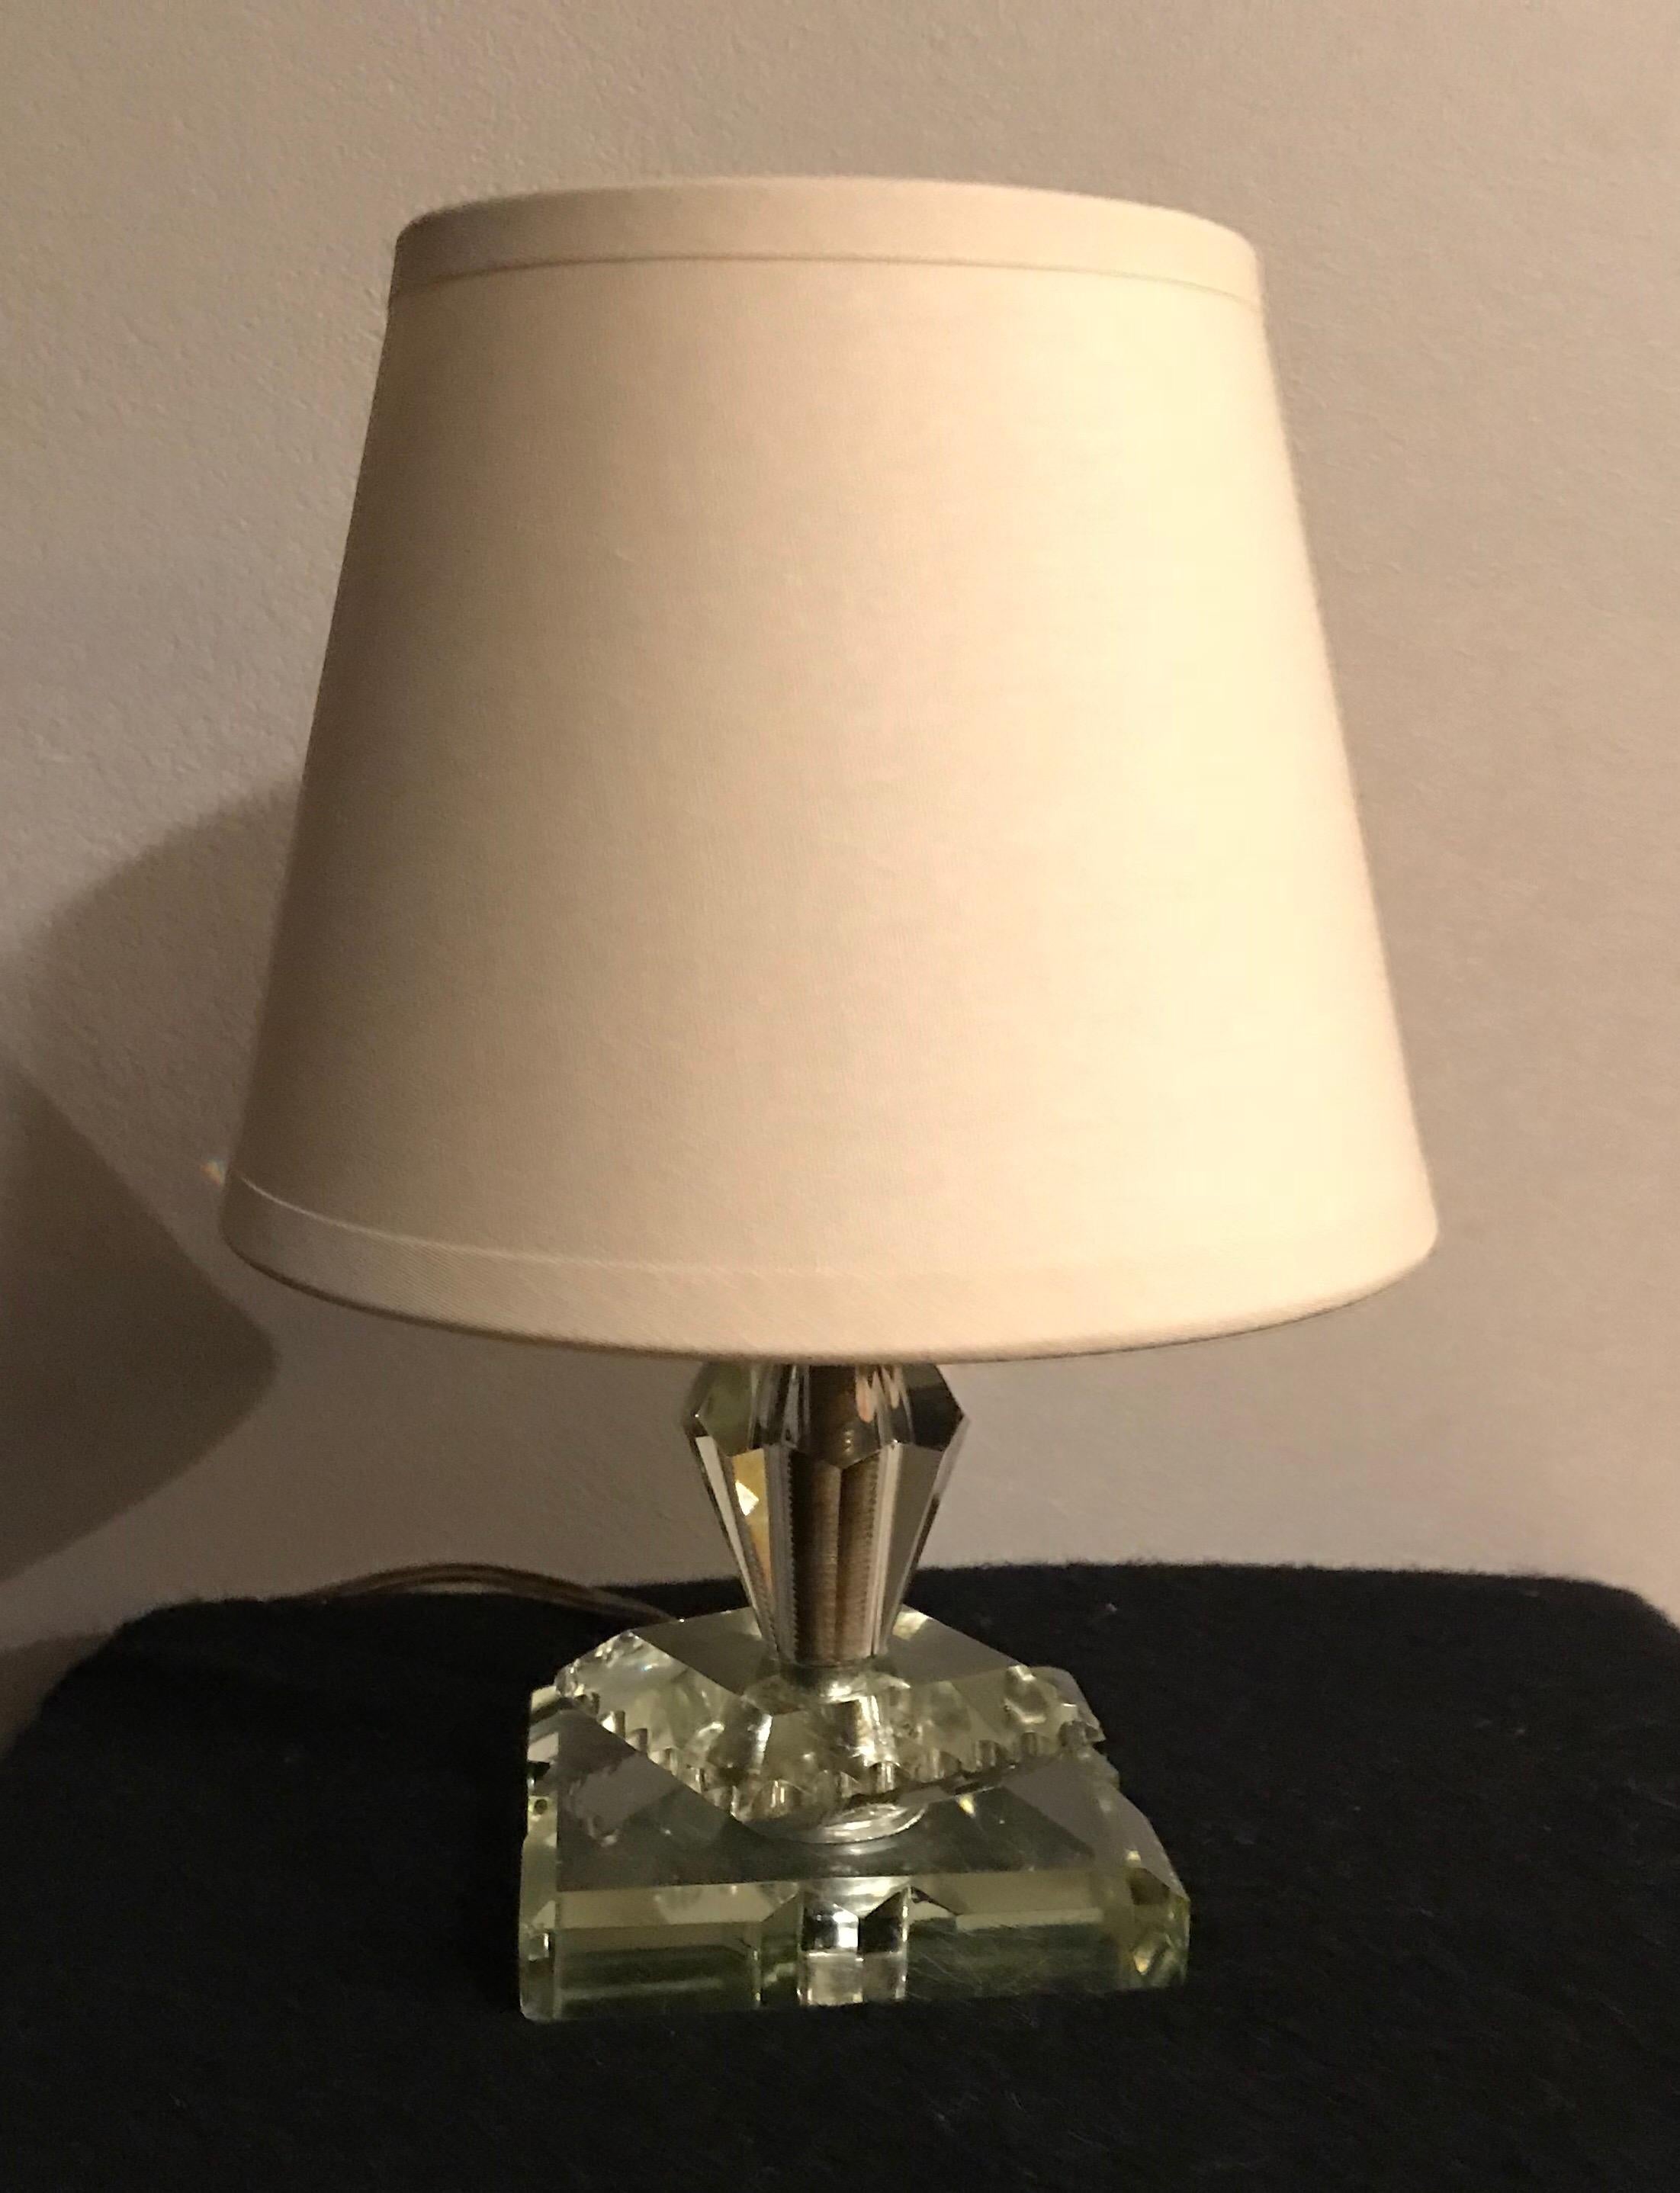 Sehr charmante Vintage-Tischlampe im Adnet-Stil mit neuem Baumwoll-Lampenschirm in einem sehr guten Allgemeinzustand.
Maße: H 22 cm x T 15,5 cm
Ohne den Lampenschirm H 15 cm x T 8,5 cm
Sockel L 8,5 cm x L 8,5 cm.